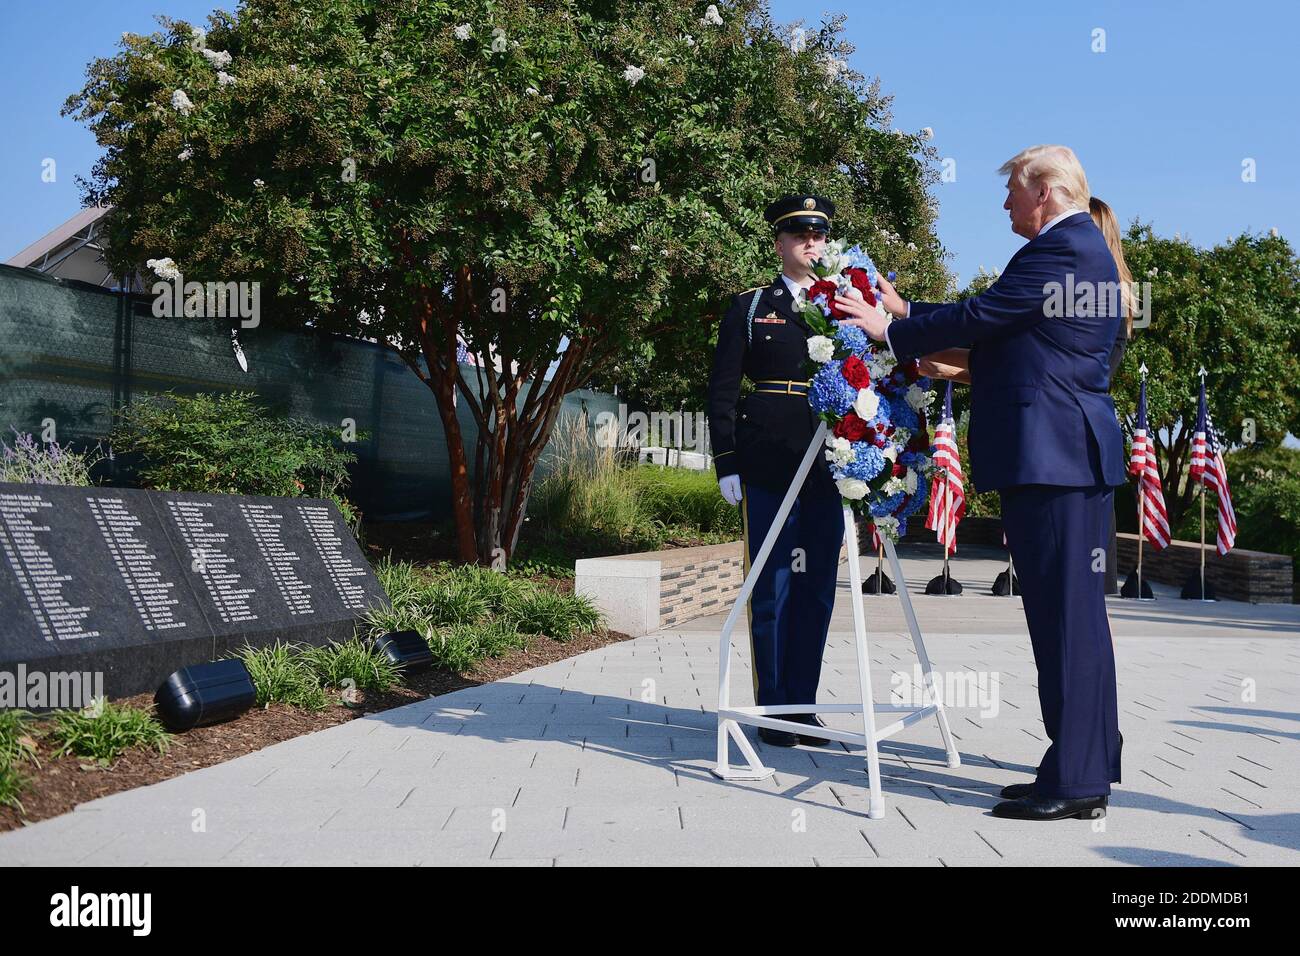 Präsident Donald Trump legt am Mittwoch, den 11. September 2019, in Arlington, Virginia, einen Kranz vor das Pentagon während des 18. Jahrestages der Terroranschläge vom 11. September. Foto von Kevin Dietsch/Pool/ABACAPRESS.COM Stockfoto